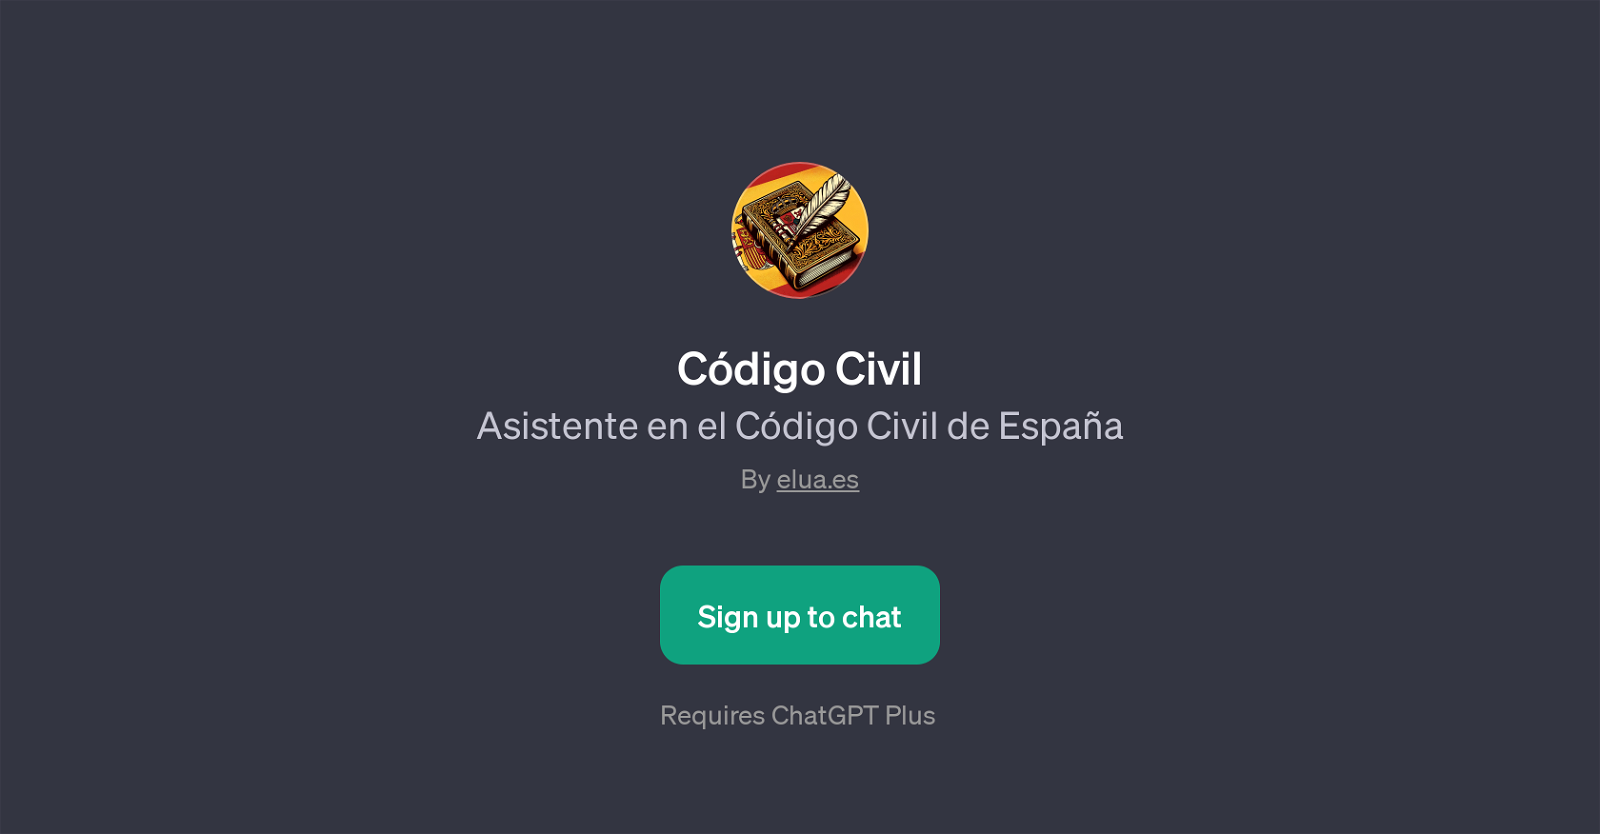 Cdigo Civil website